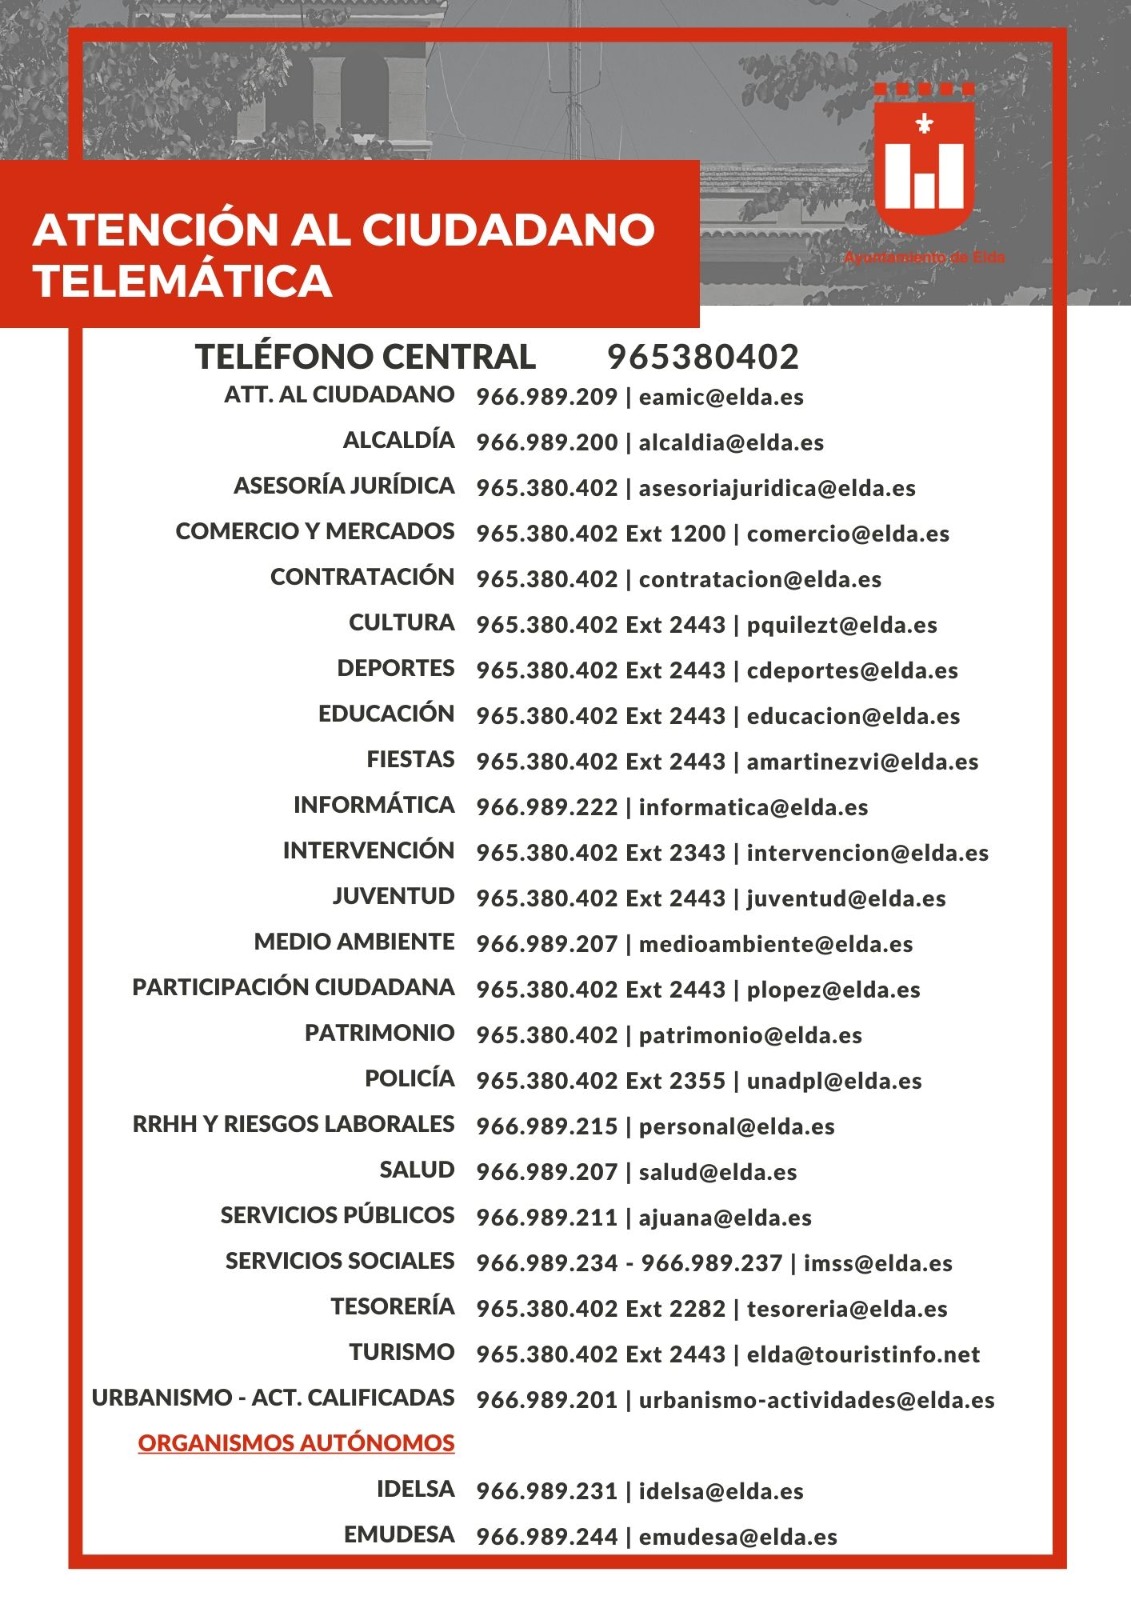 El Ayuntamiento de Elda informa de las vías de contacto para atención ciudadana telemática